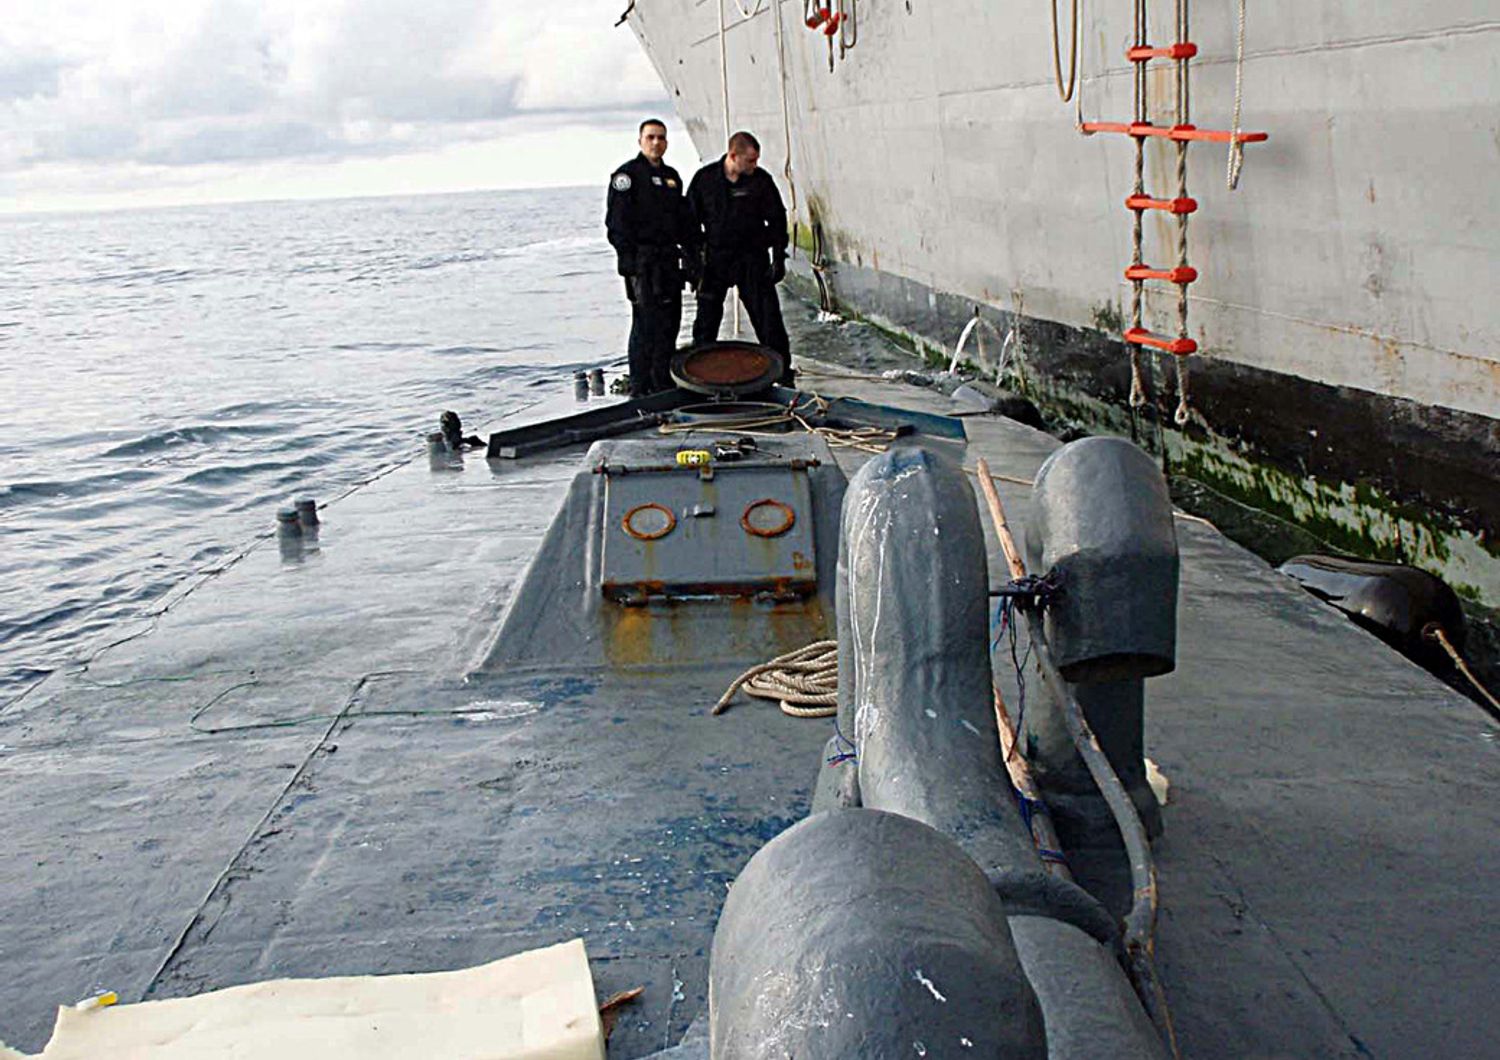 La Guardia costiera americana ha interccettato un sottomarino carico di cocaina (immagine del 2013)